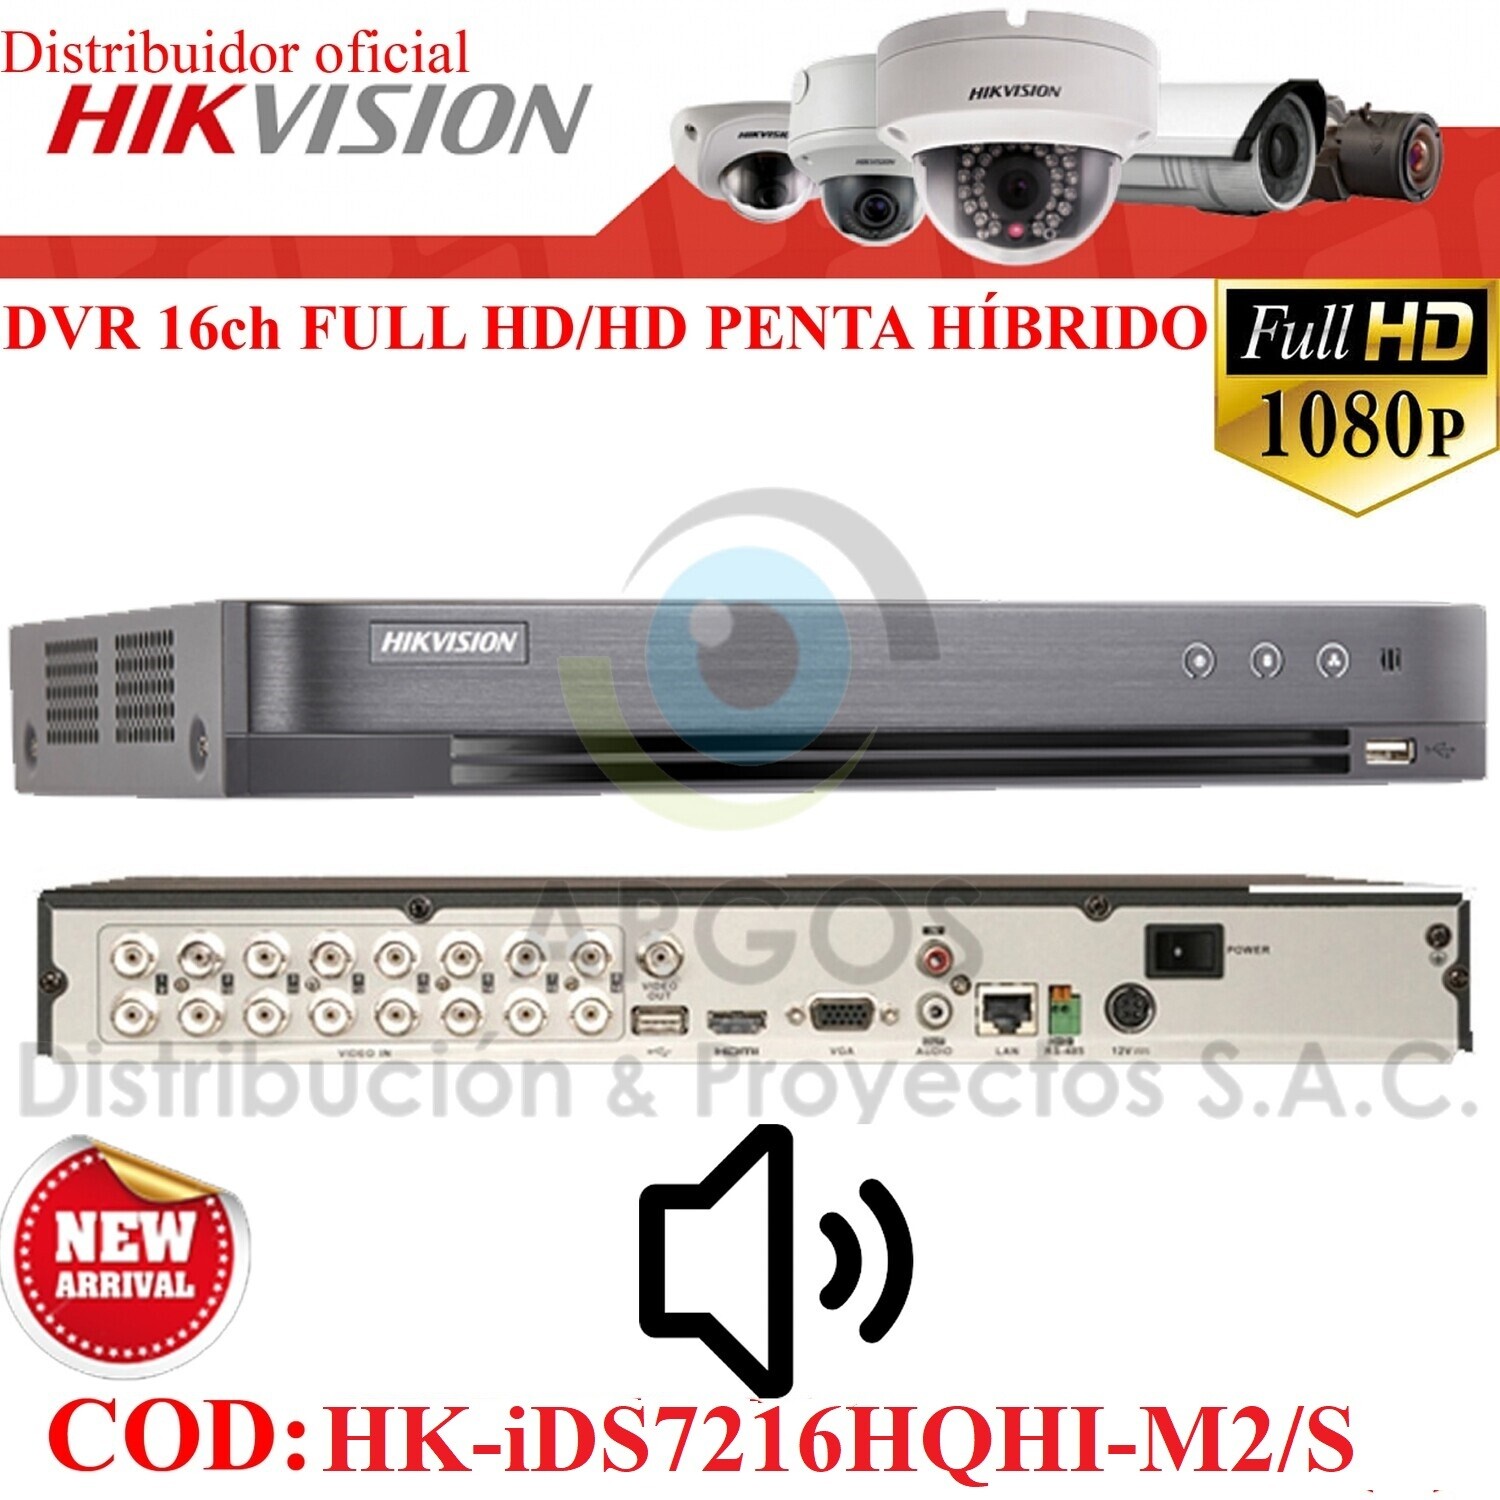 ¡Nuevo! DVR 16CH FULL HD 1080P | SOPORTA 16 CAMARAS CON AUDIO | PENTA HIBRIDO | HIKVISION